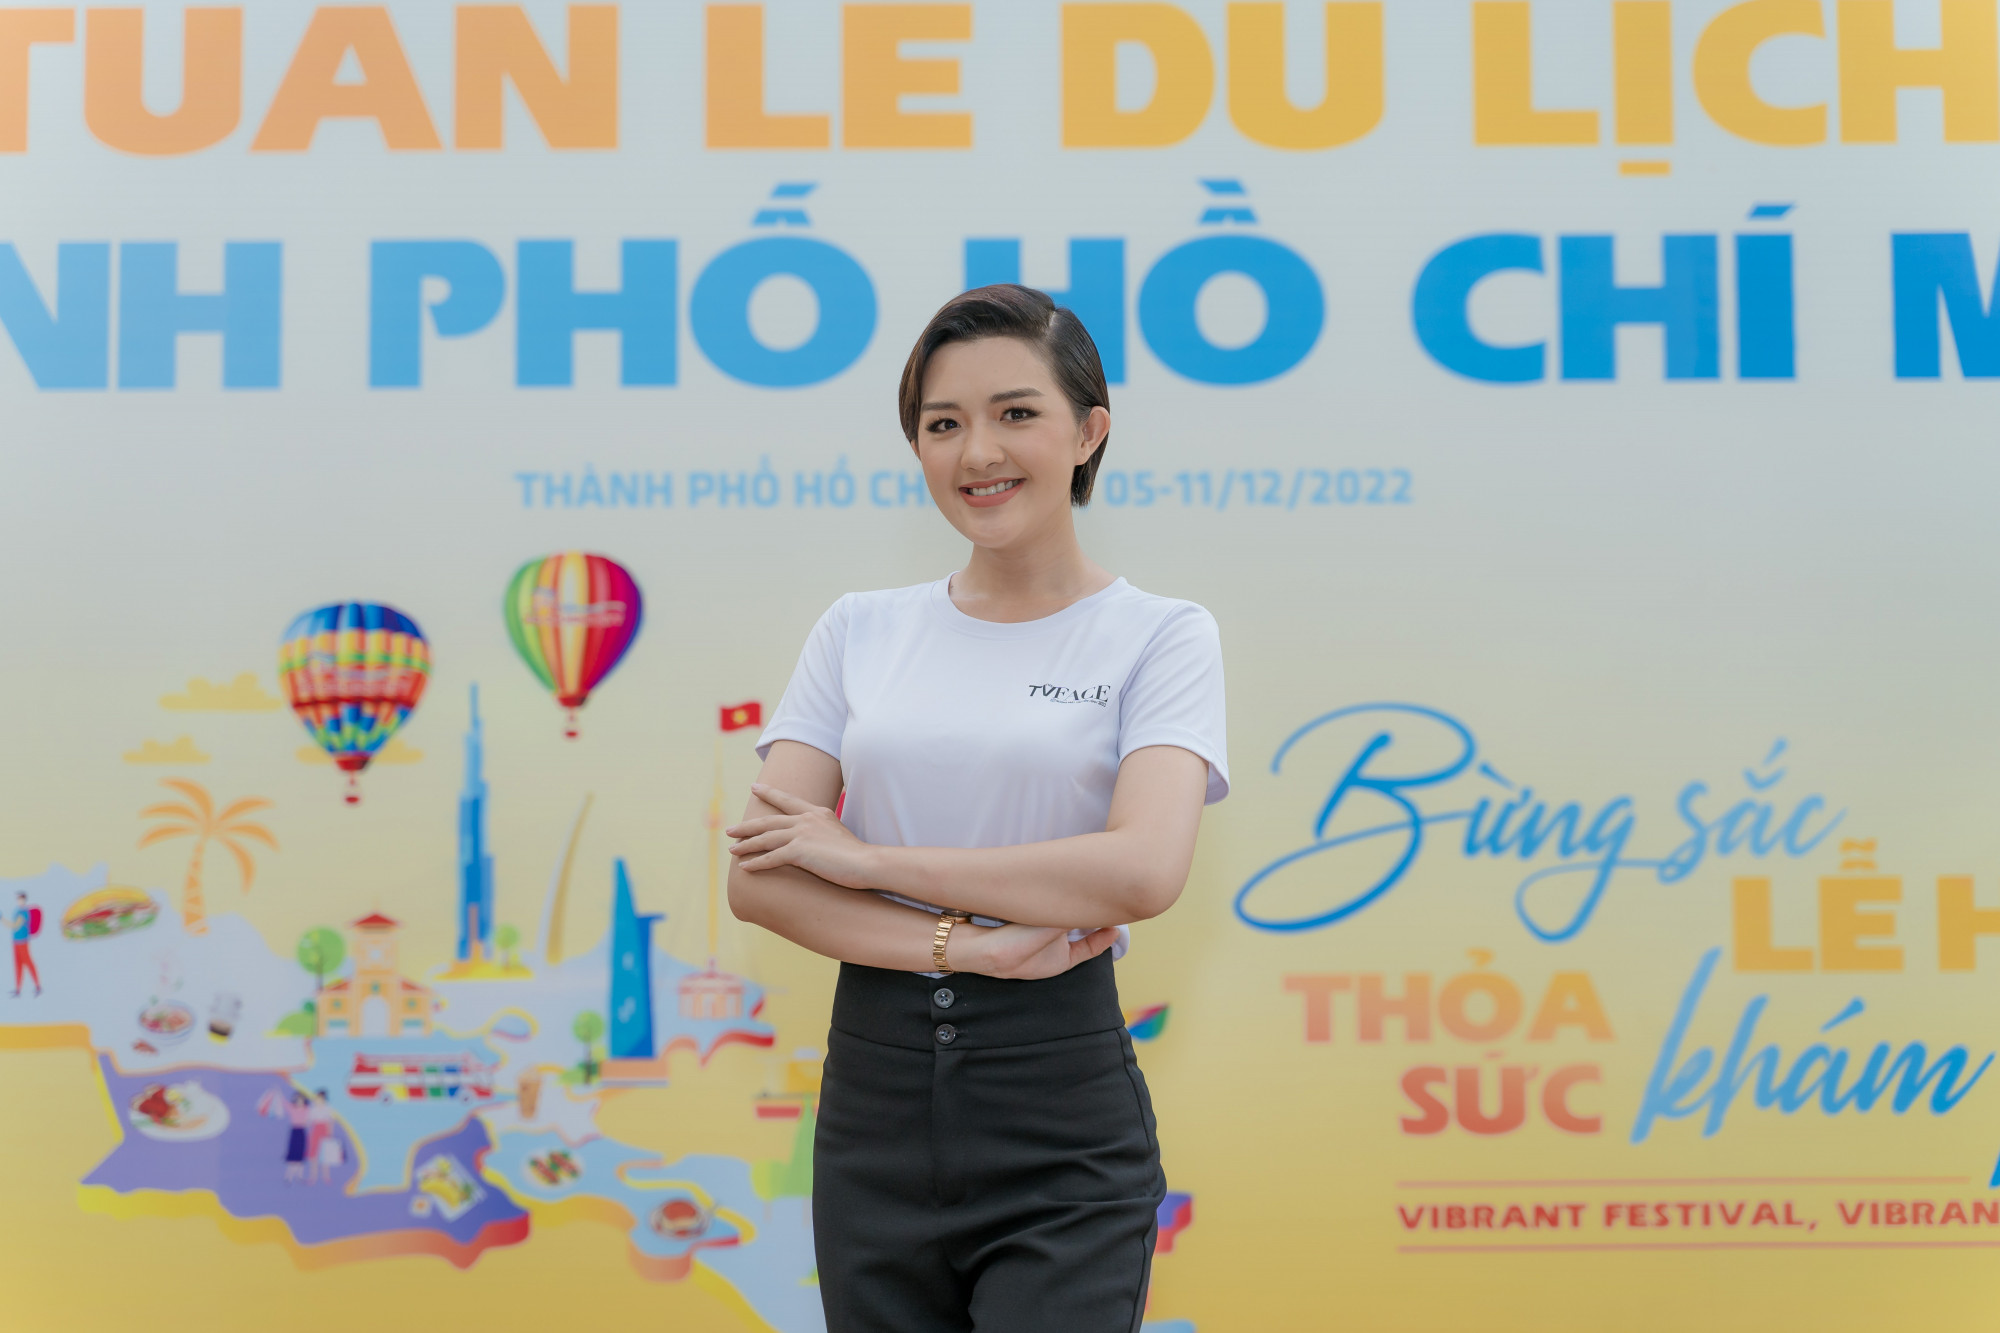 Mới đây, Á hậu – MC Quản Hân khiến nhiều khán giả bất ngờ với vẻ ngoài đầy năng động và dịu dàng khi xuất hiện trong chương trình “Thành phố Hồ Chí Minh – 100 điều thú vị” năm 2022, với tư cách là một trong 4 đại sứ Tuần lễ du lịch TPHCM 2022.